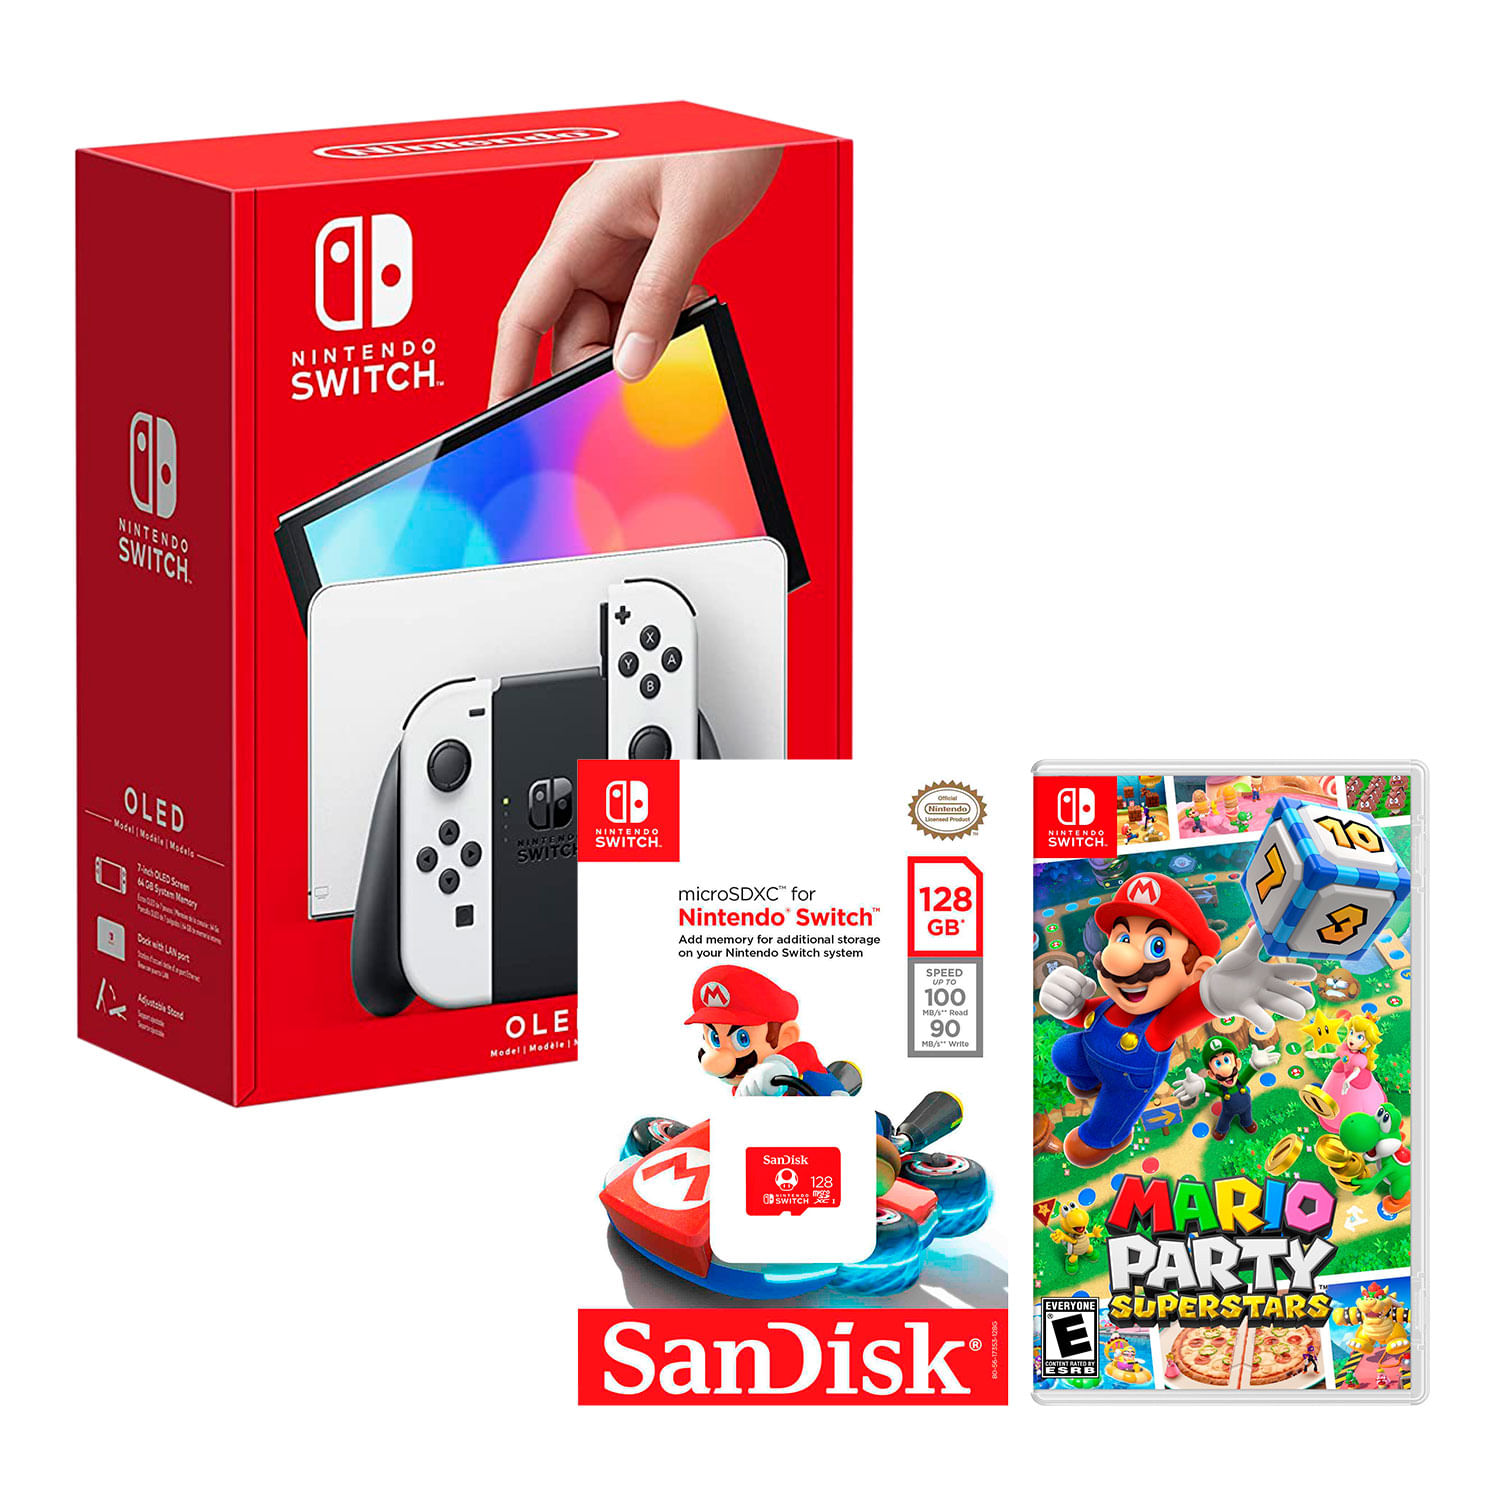 Consola Nintendo Switch Modelo Oled Blanco + Mario Party Superstar + Micro SD 128 GB Edicion Mario